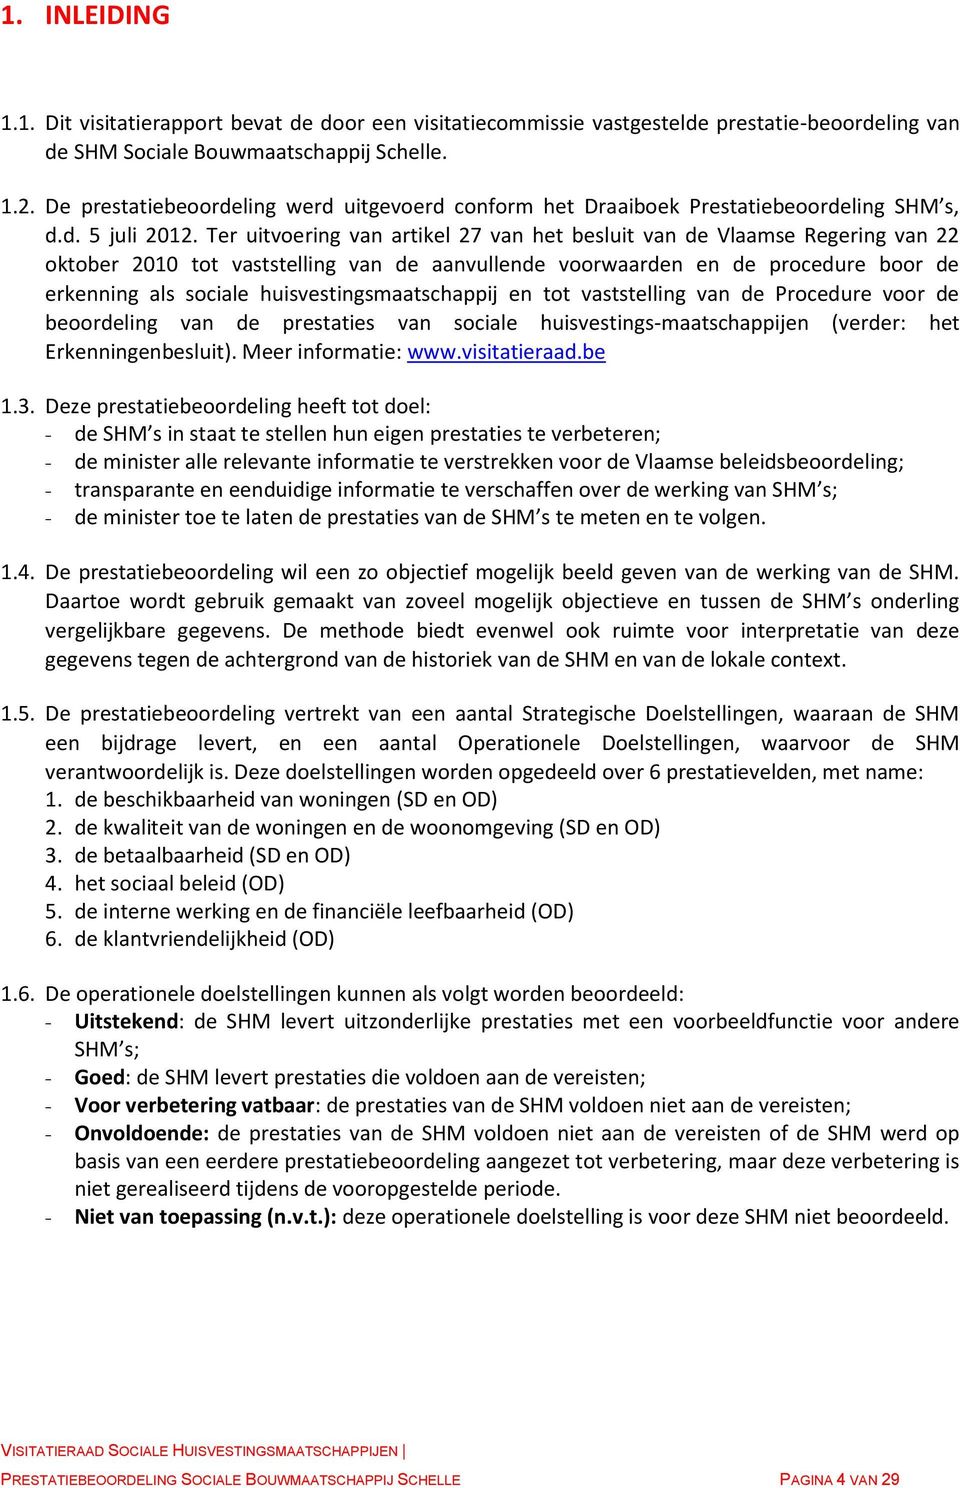 Ter uitvoering van artikel 27 van het besluit van de Vlaamse Regering van 22 oktober 2010 tot vaststelling van de aanvullende voorwaarden en de procedure boor de erkenning als sociale